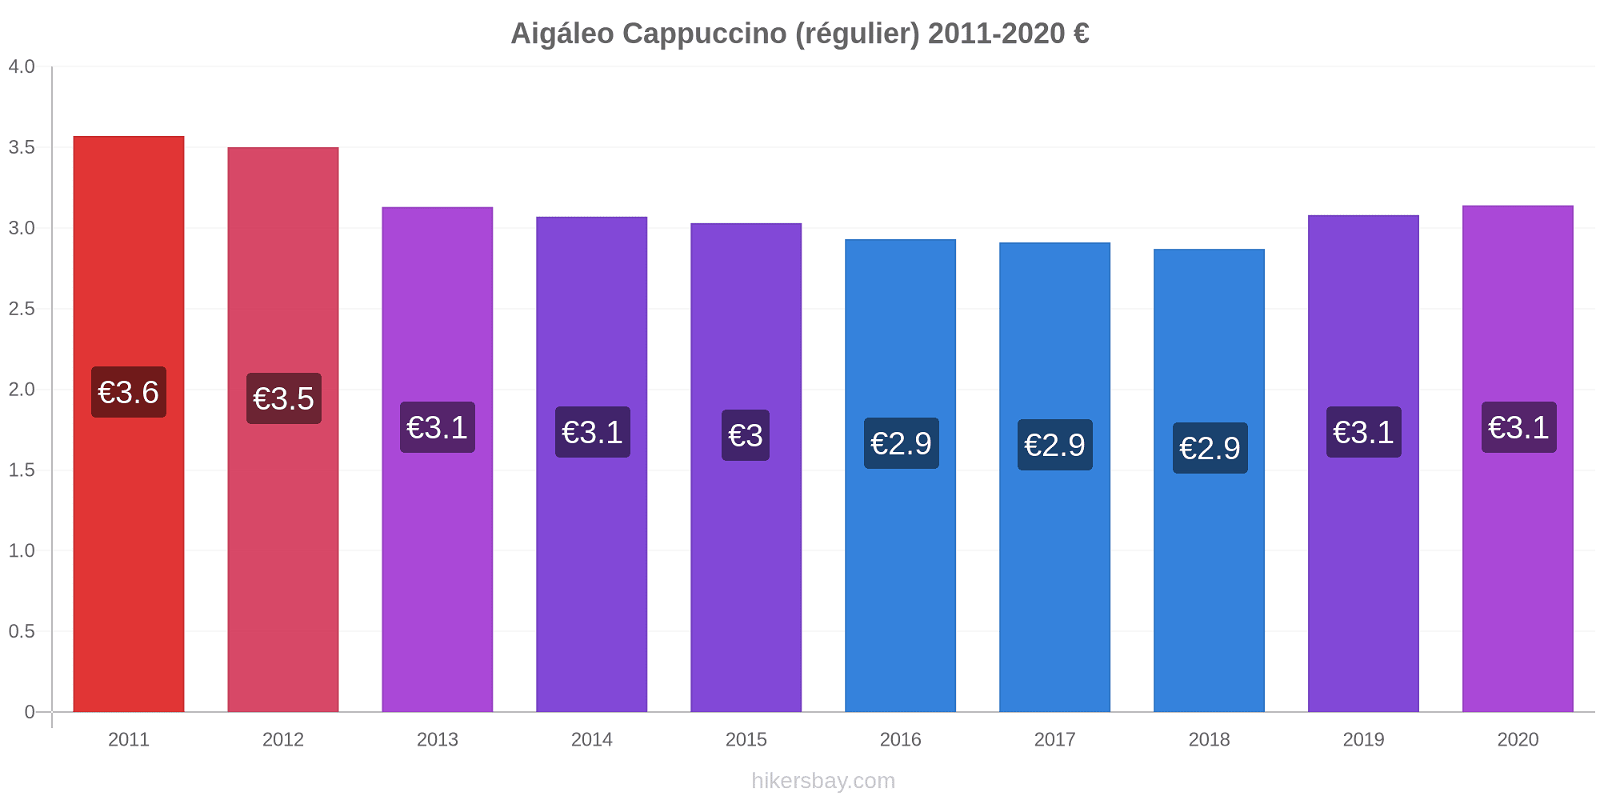 Aigáleo changements de prix Cappuccino (régulier) hikersbay.com